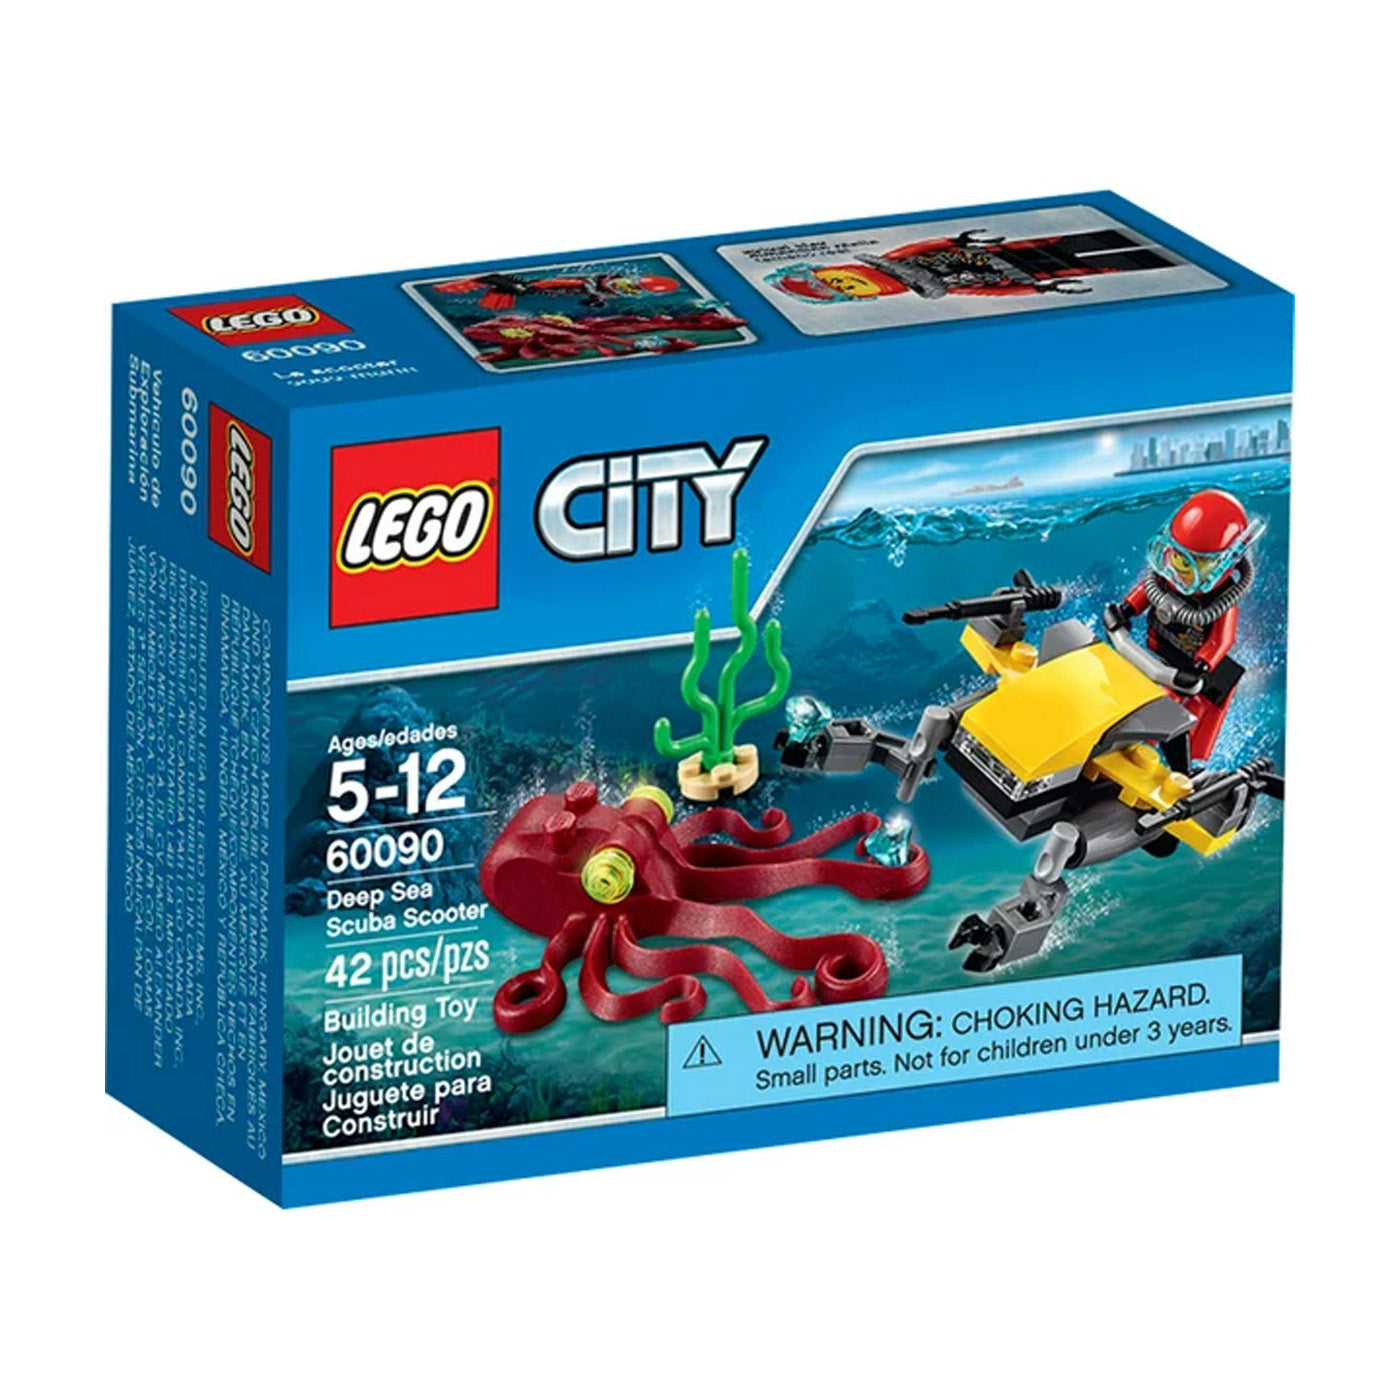 LEGO City: Deep Sea Scuba Scooter Set 60090